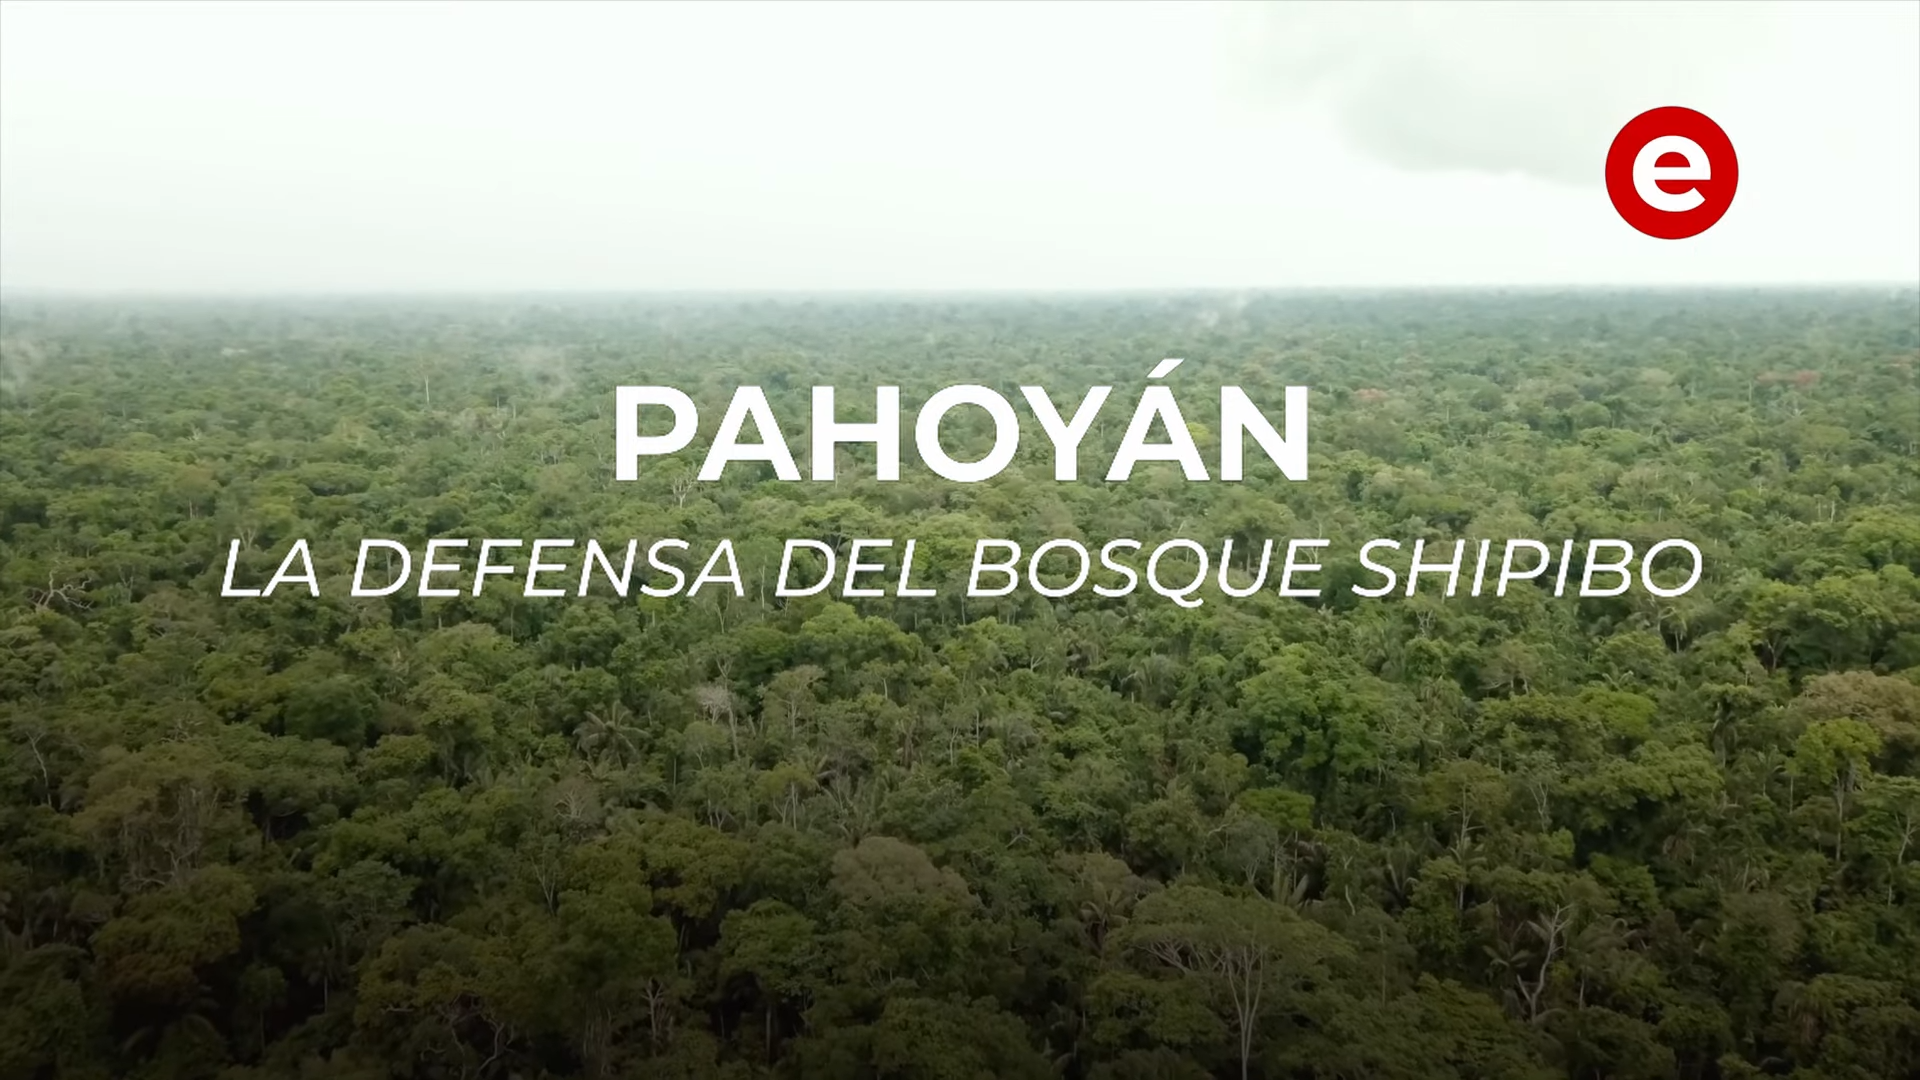 Pahoyán, la defensa del bosque shipibo